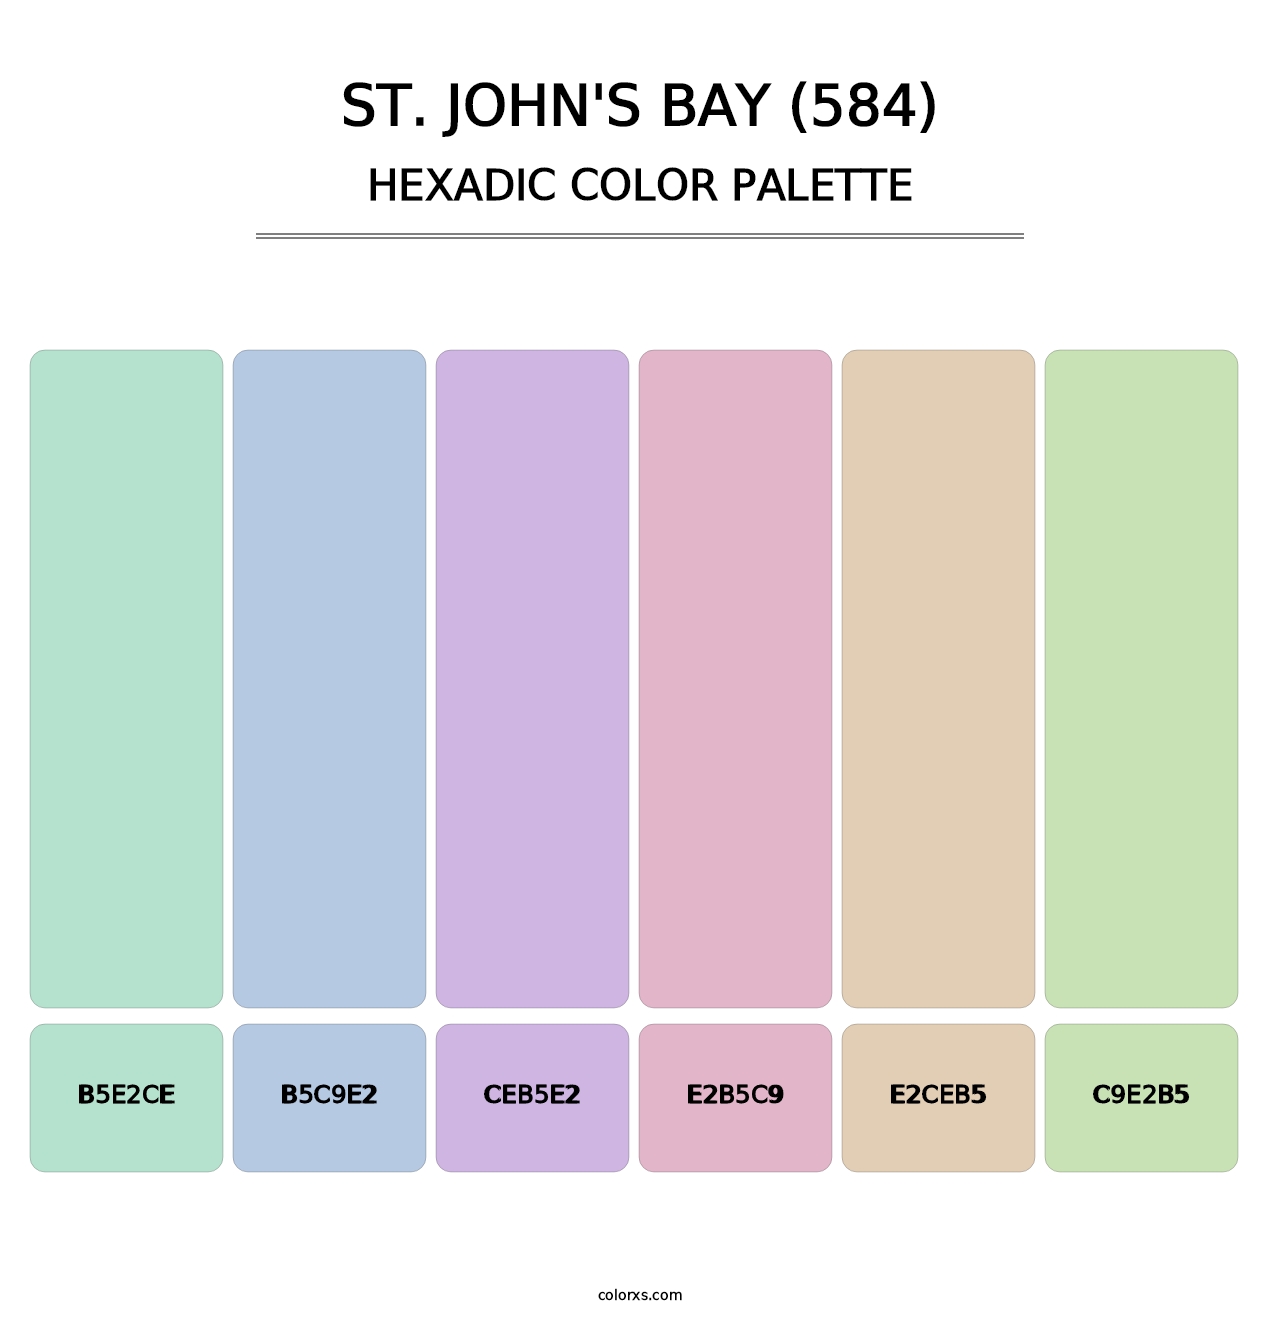 St. John's Bay (584) - Hexadic Color Palette